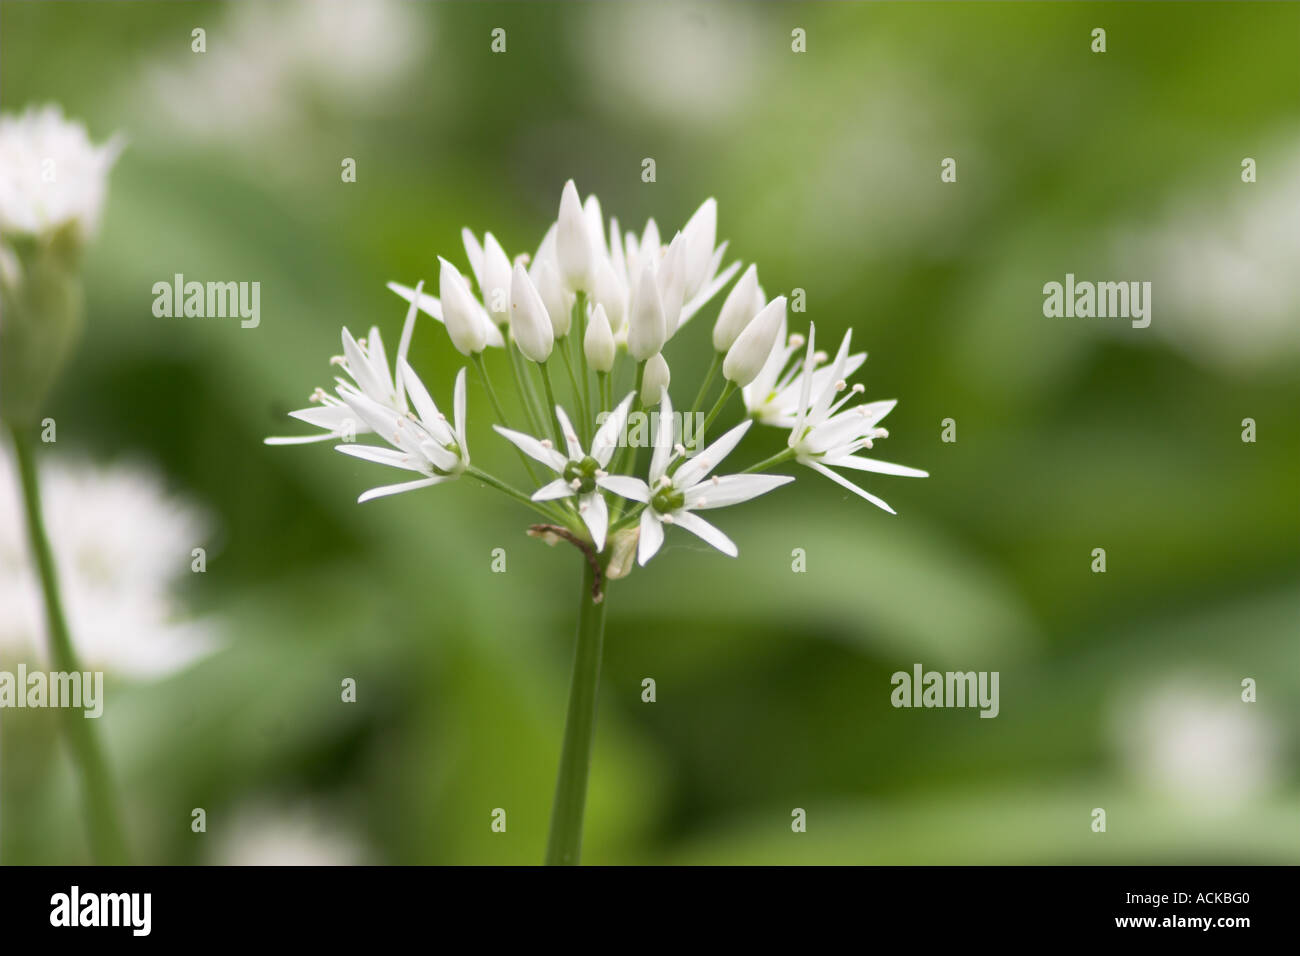 Allium White Wild Garlic Stock Photo